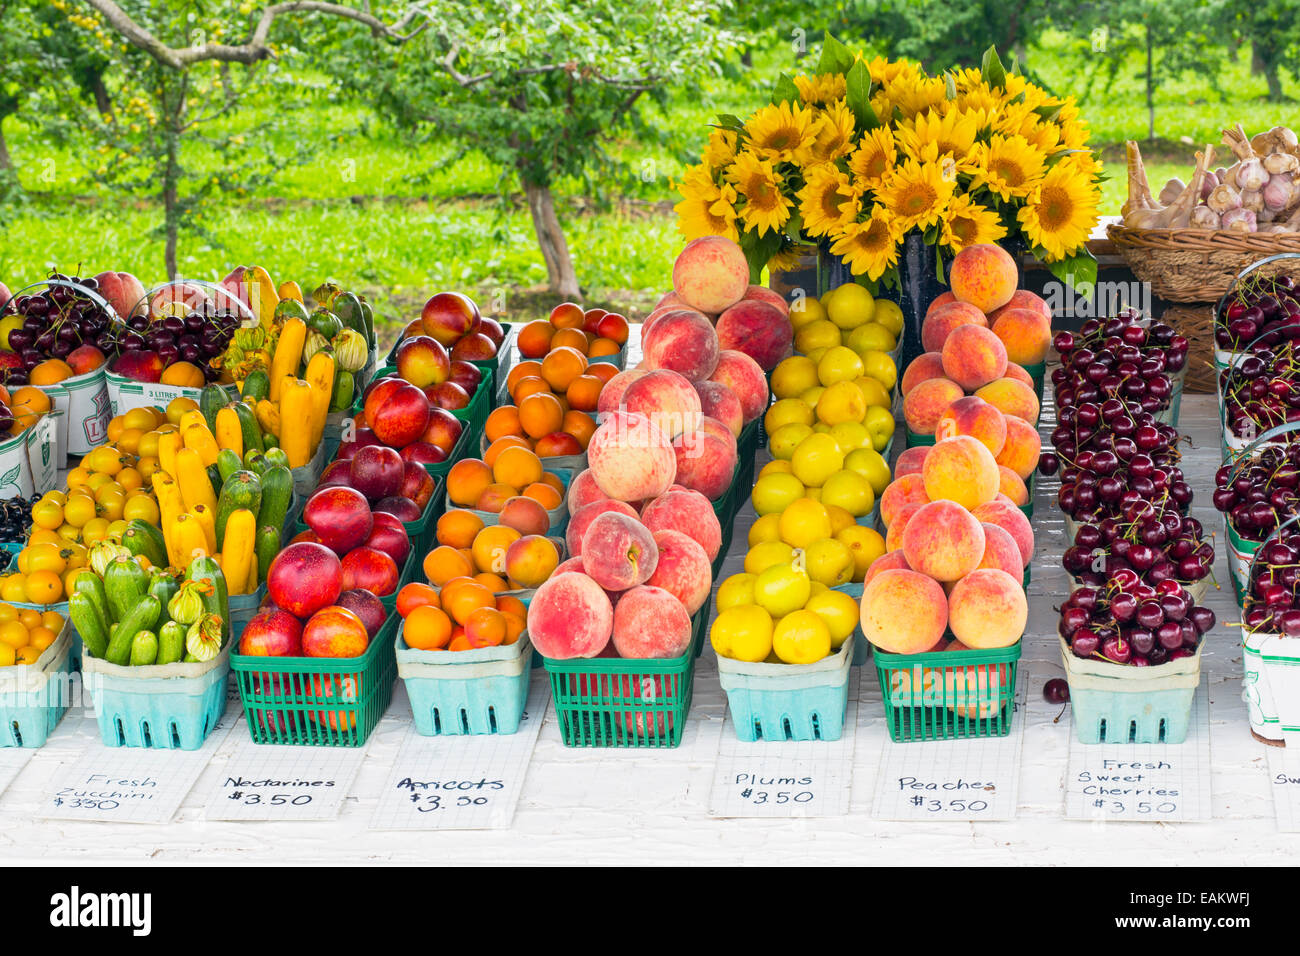 Kanada, Ontario, Niagara-on-the-Lake, frisches Obst und Gemüse auf Anzeige an einer Straße stehen Seite Stockfoto